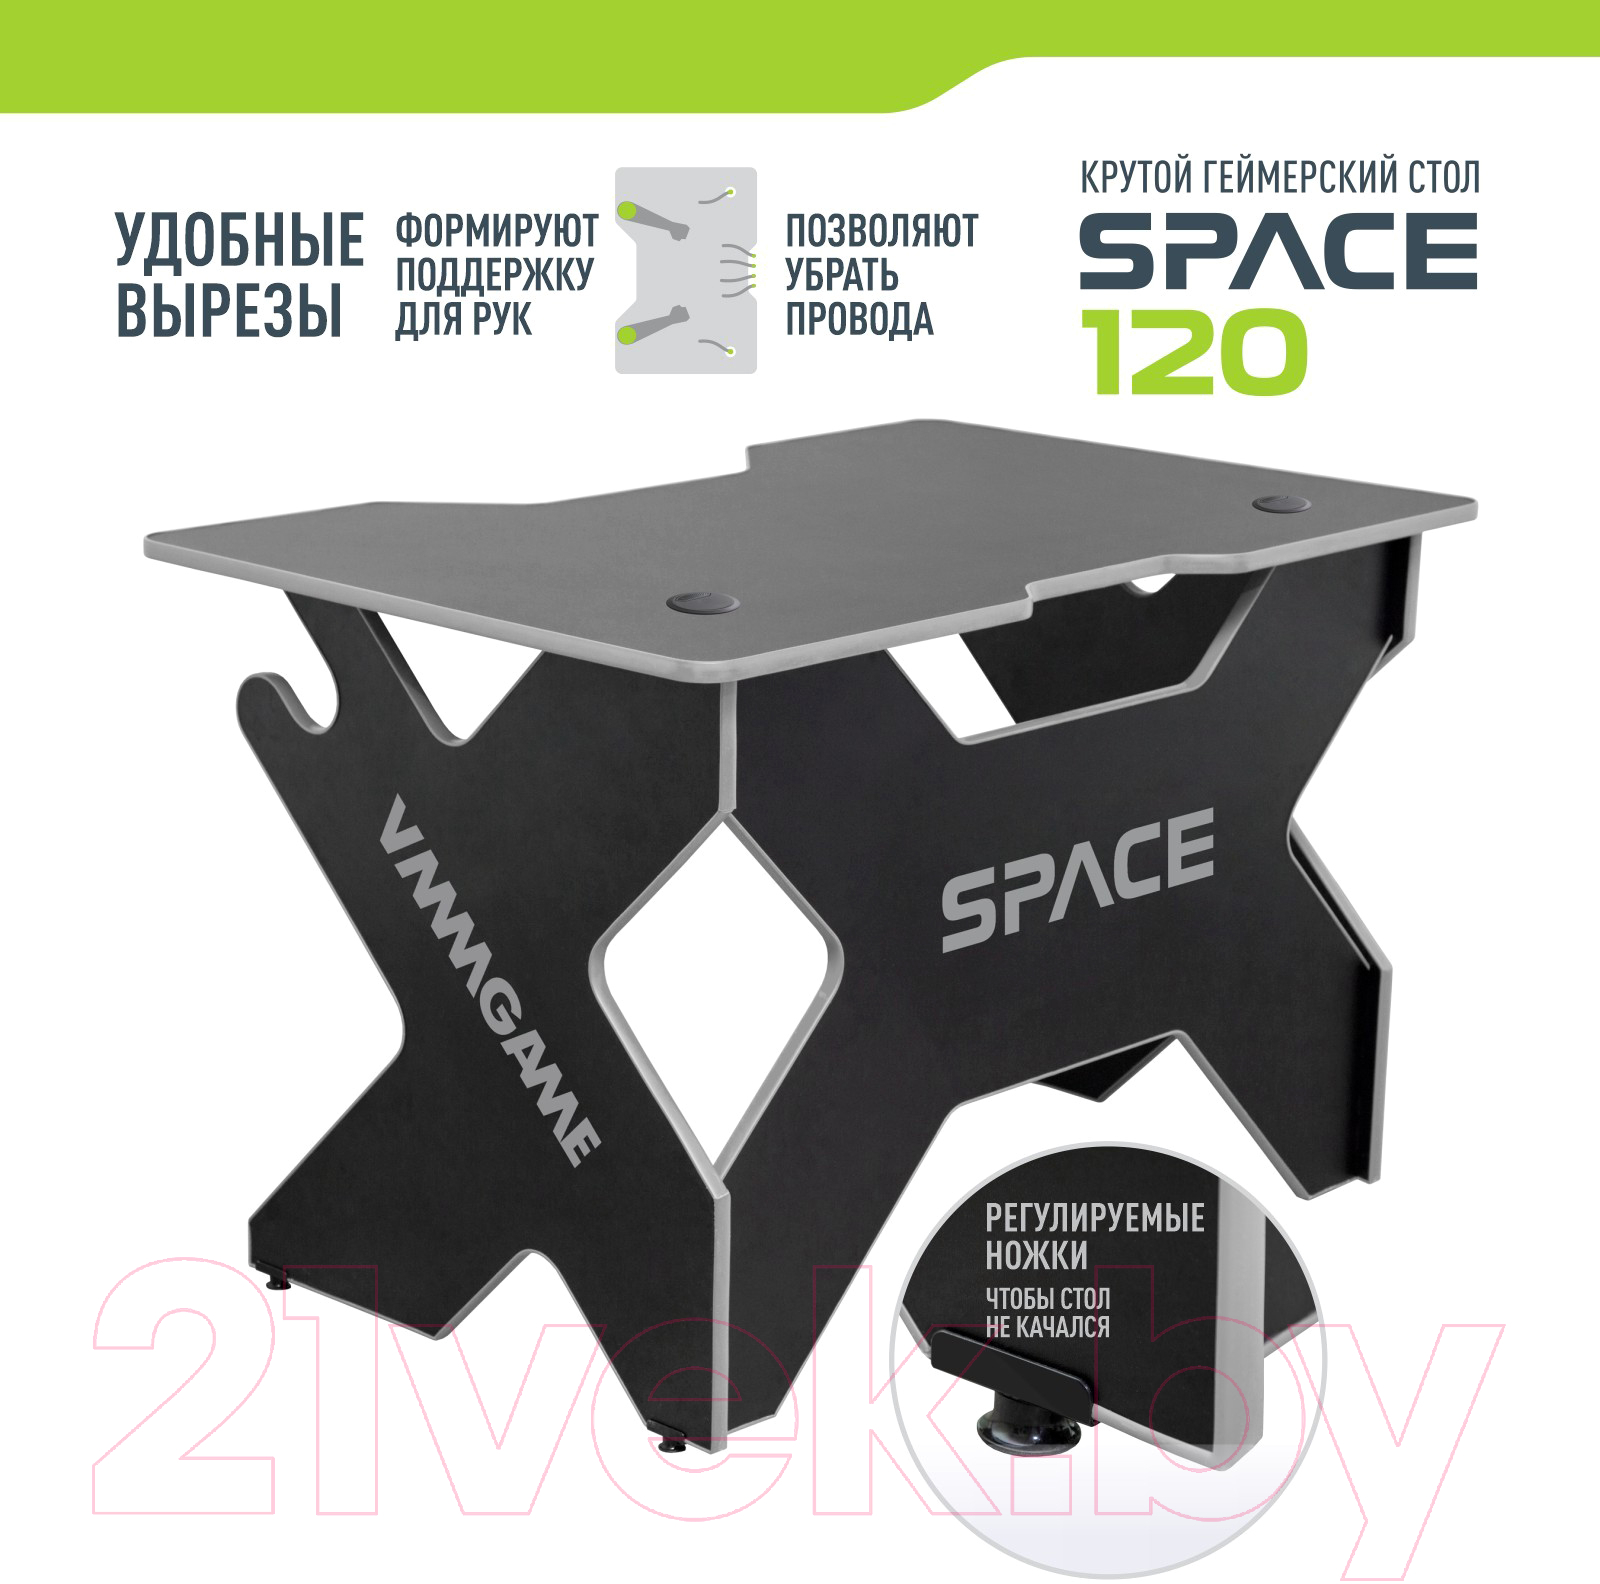 Геймерский стол Vmmgame Space 120 Dark Grey / ST-1BGY